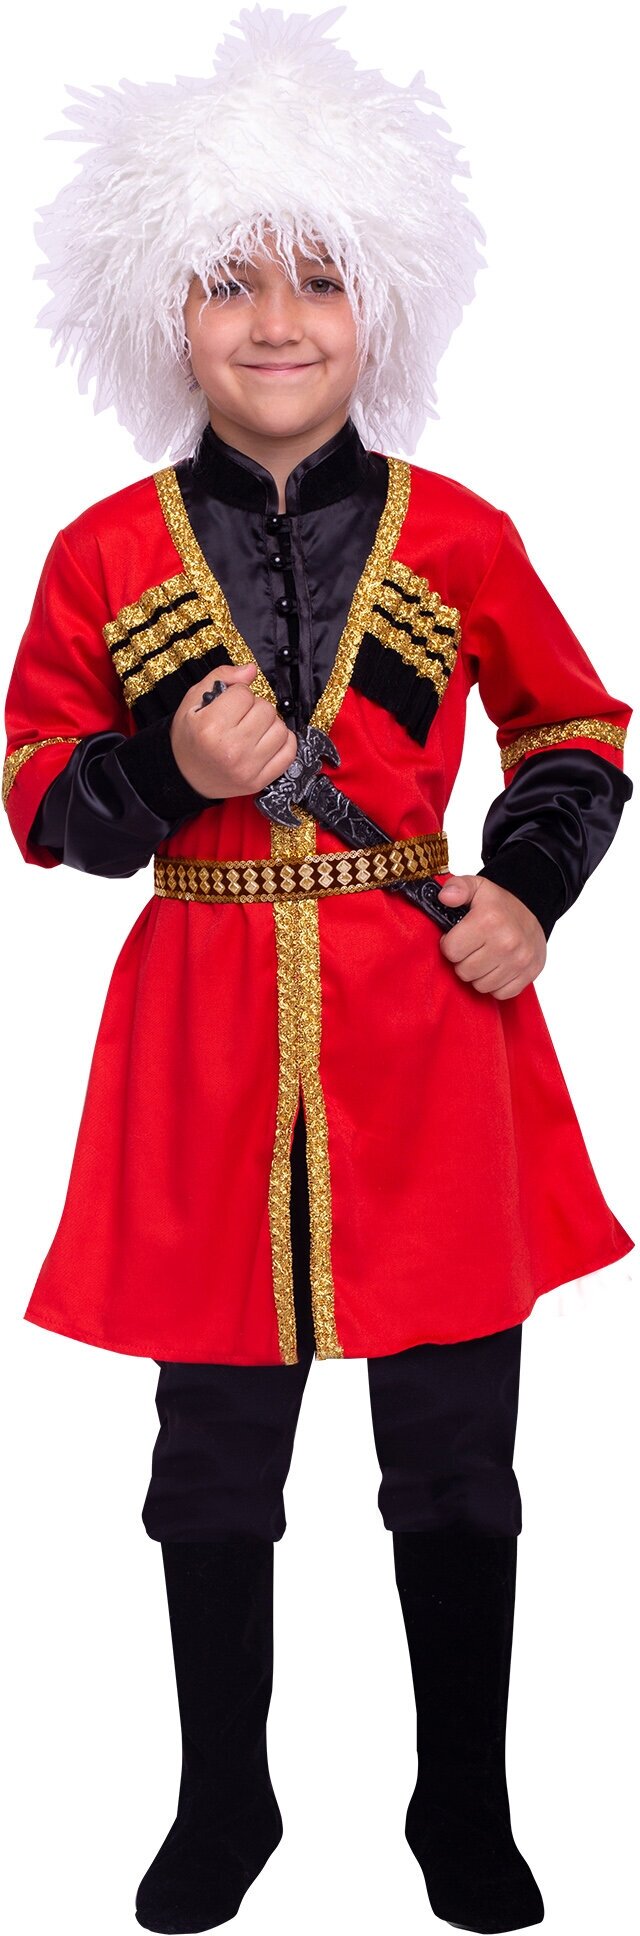 Кавказский национальный костюм (2132 к-22), размер 140, цвет мультиколор, бренд Пуговка